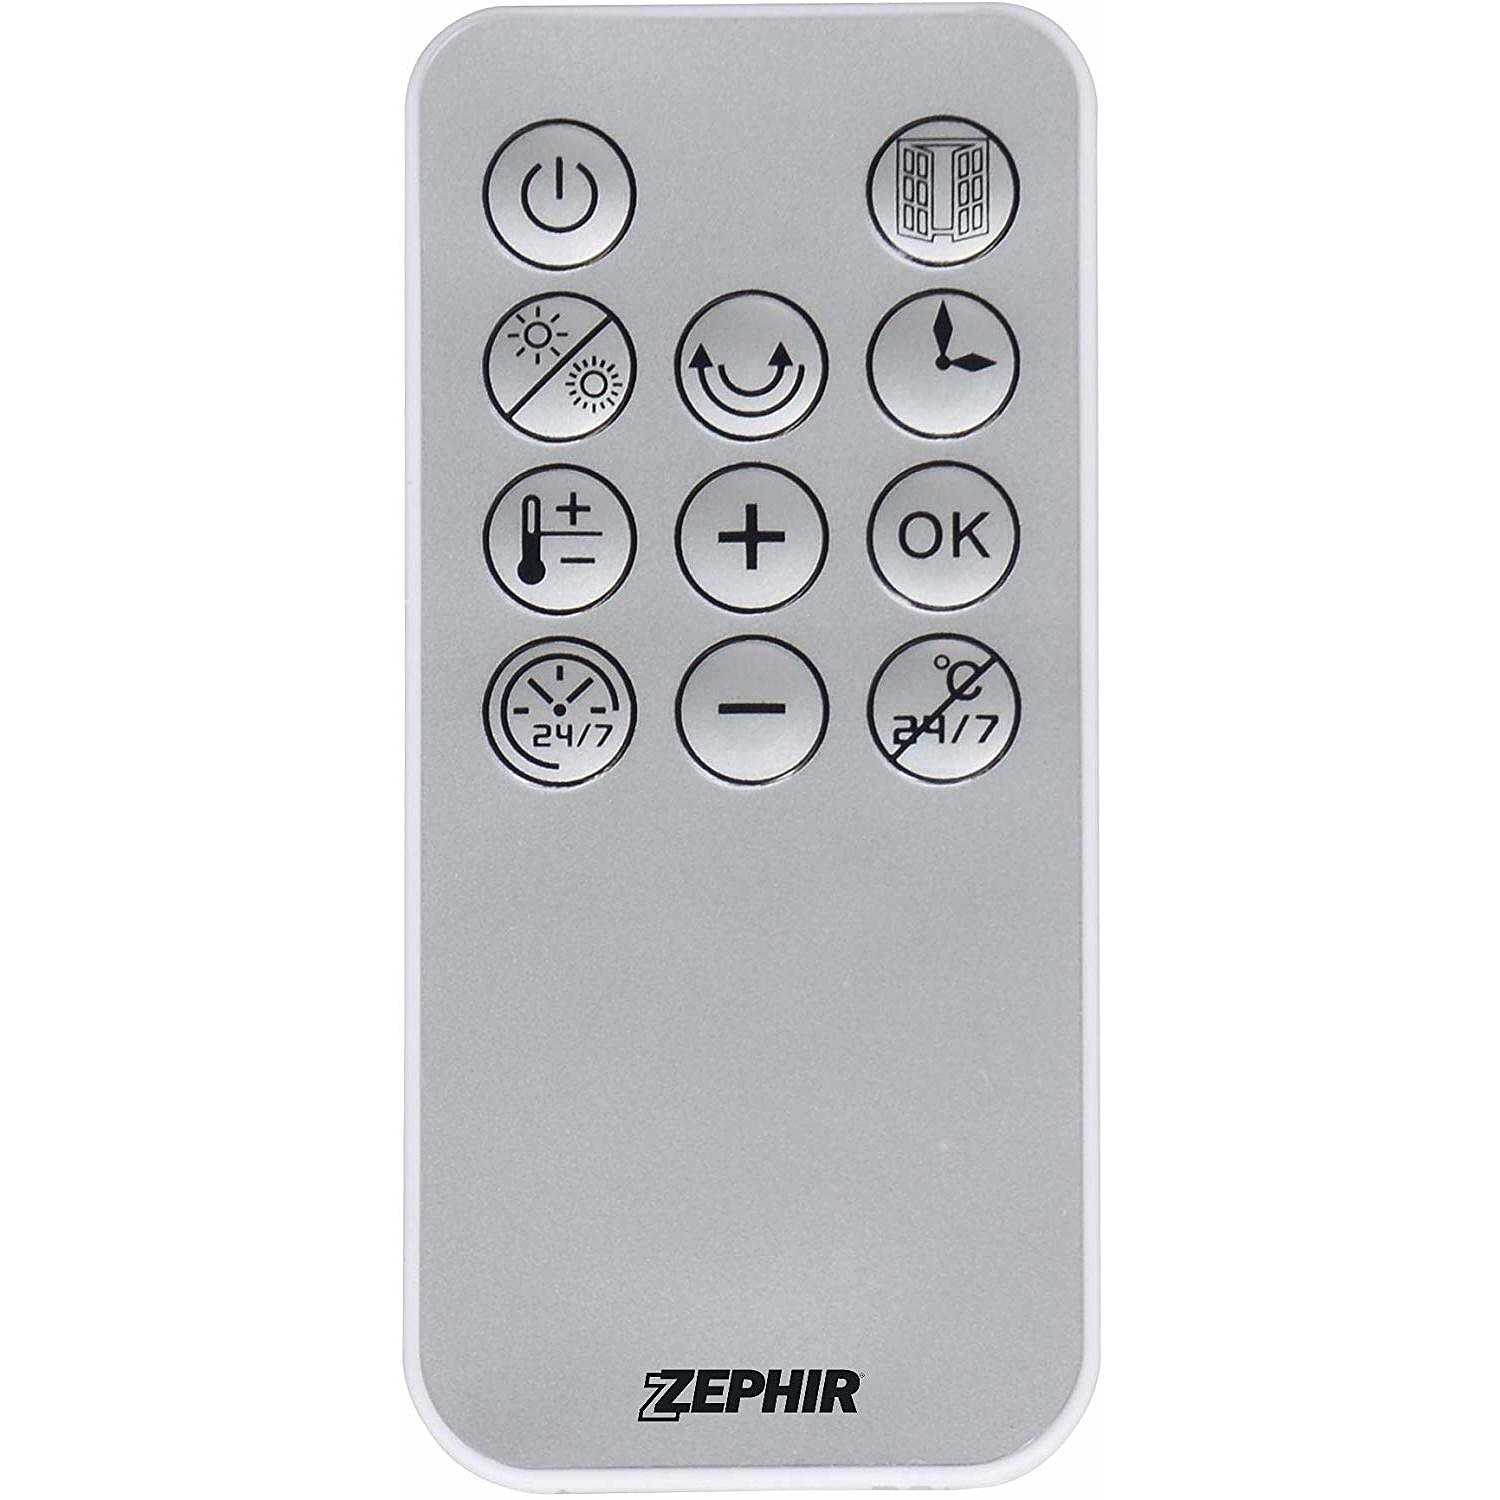 Zephir ZMW1002B termoventilatore ceramico da parete 2000 Watt colore bianco  - Trattamento Aria termoconvettori - ClickForShop